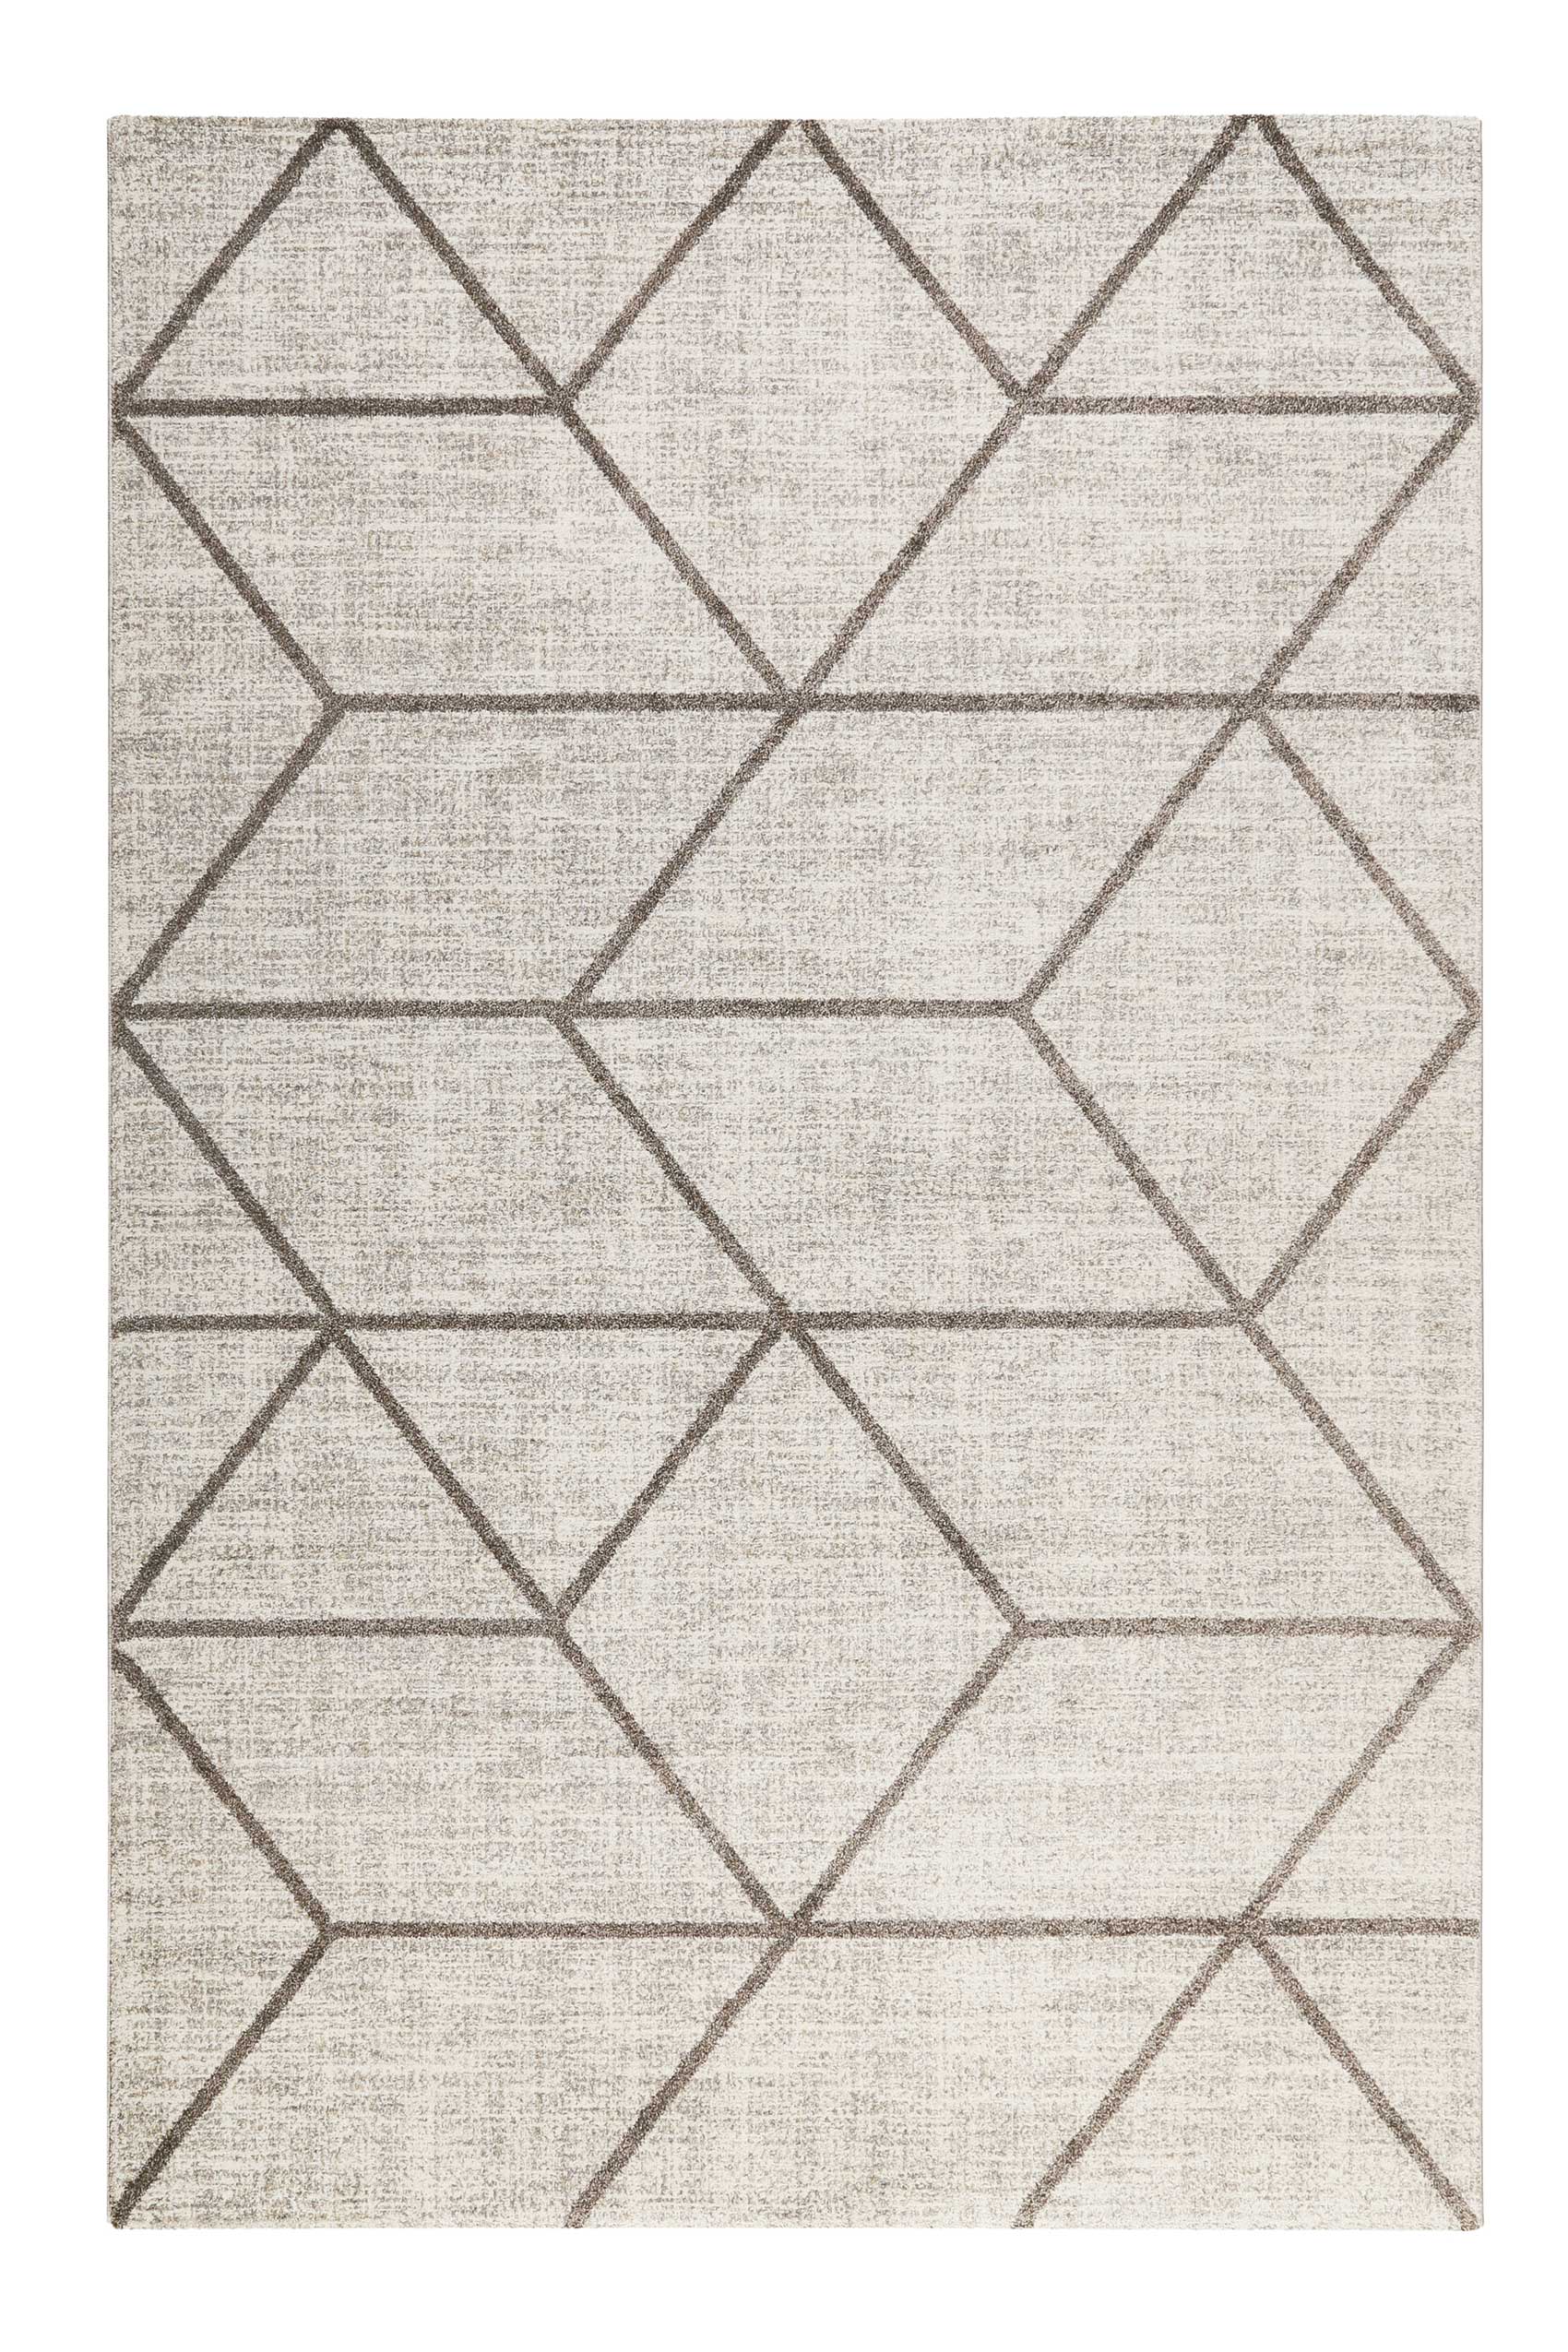 Tapis graphique motif brun gris beige chiné 170x120